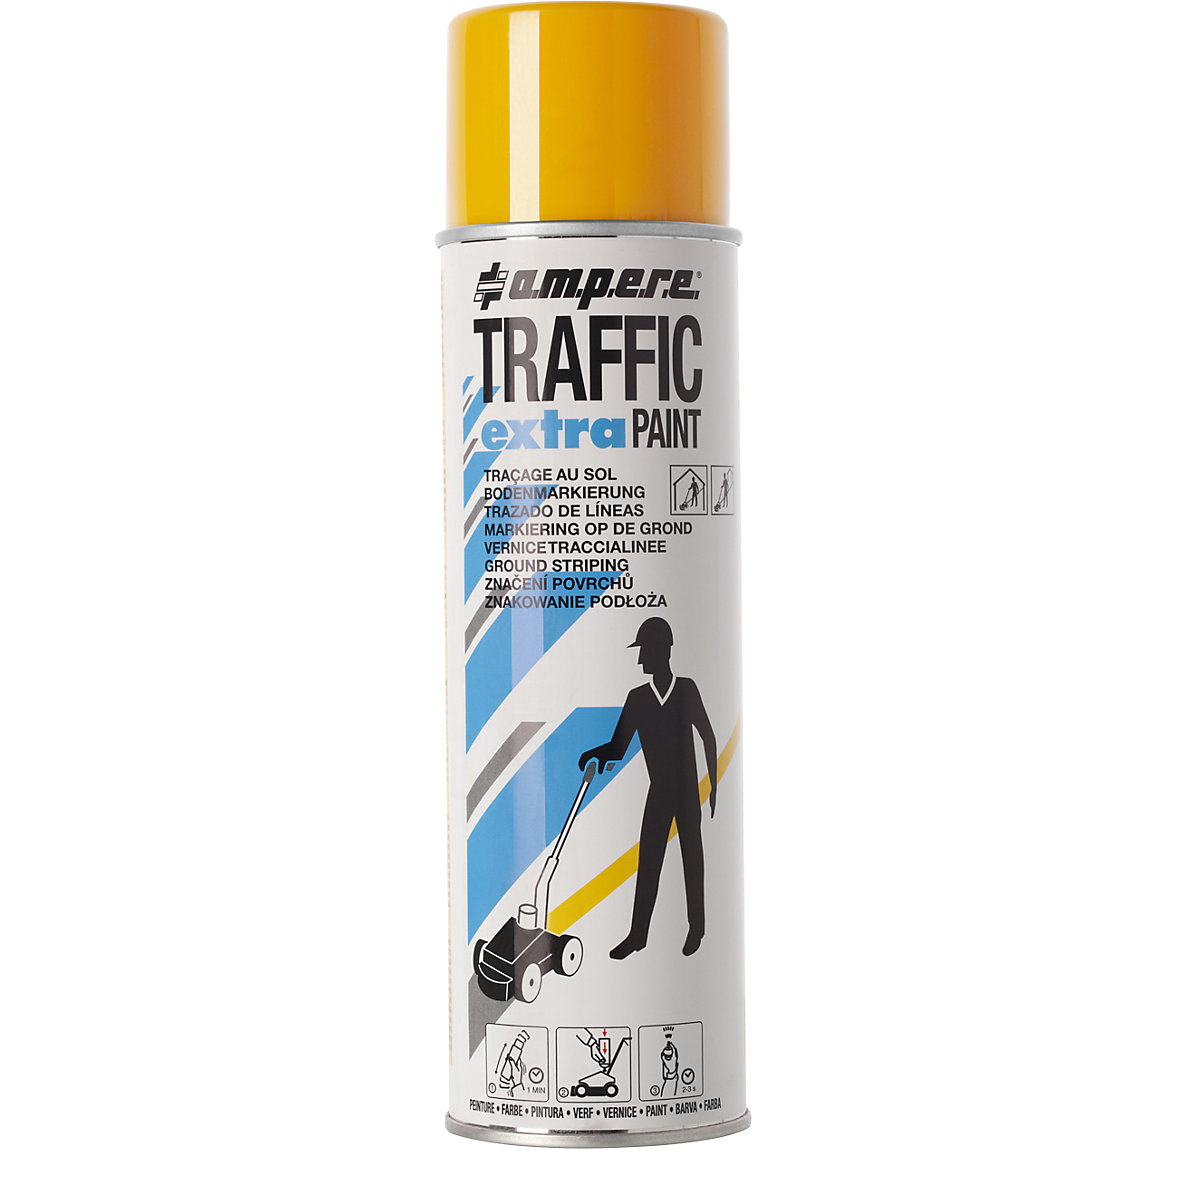 Farba do znakowania Traffic extra Paint® do intensywnego użytkowania – Ampere